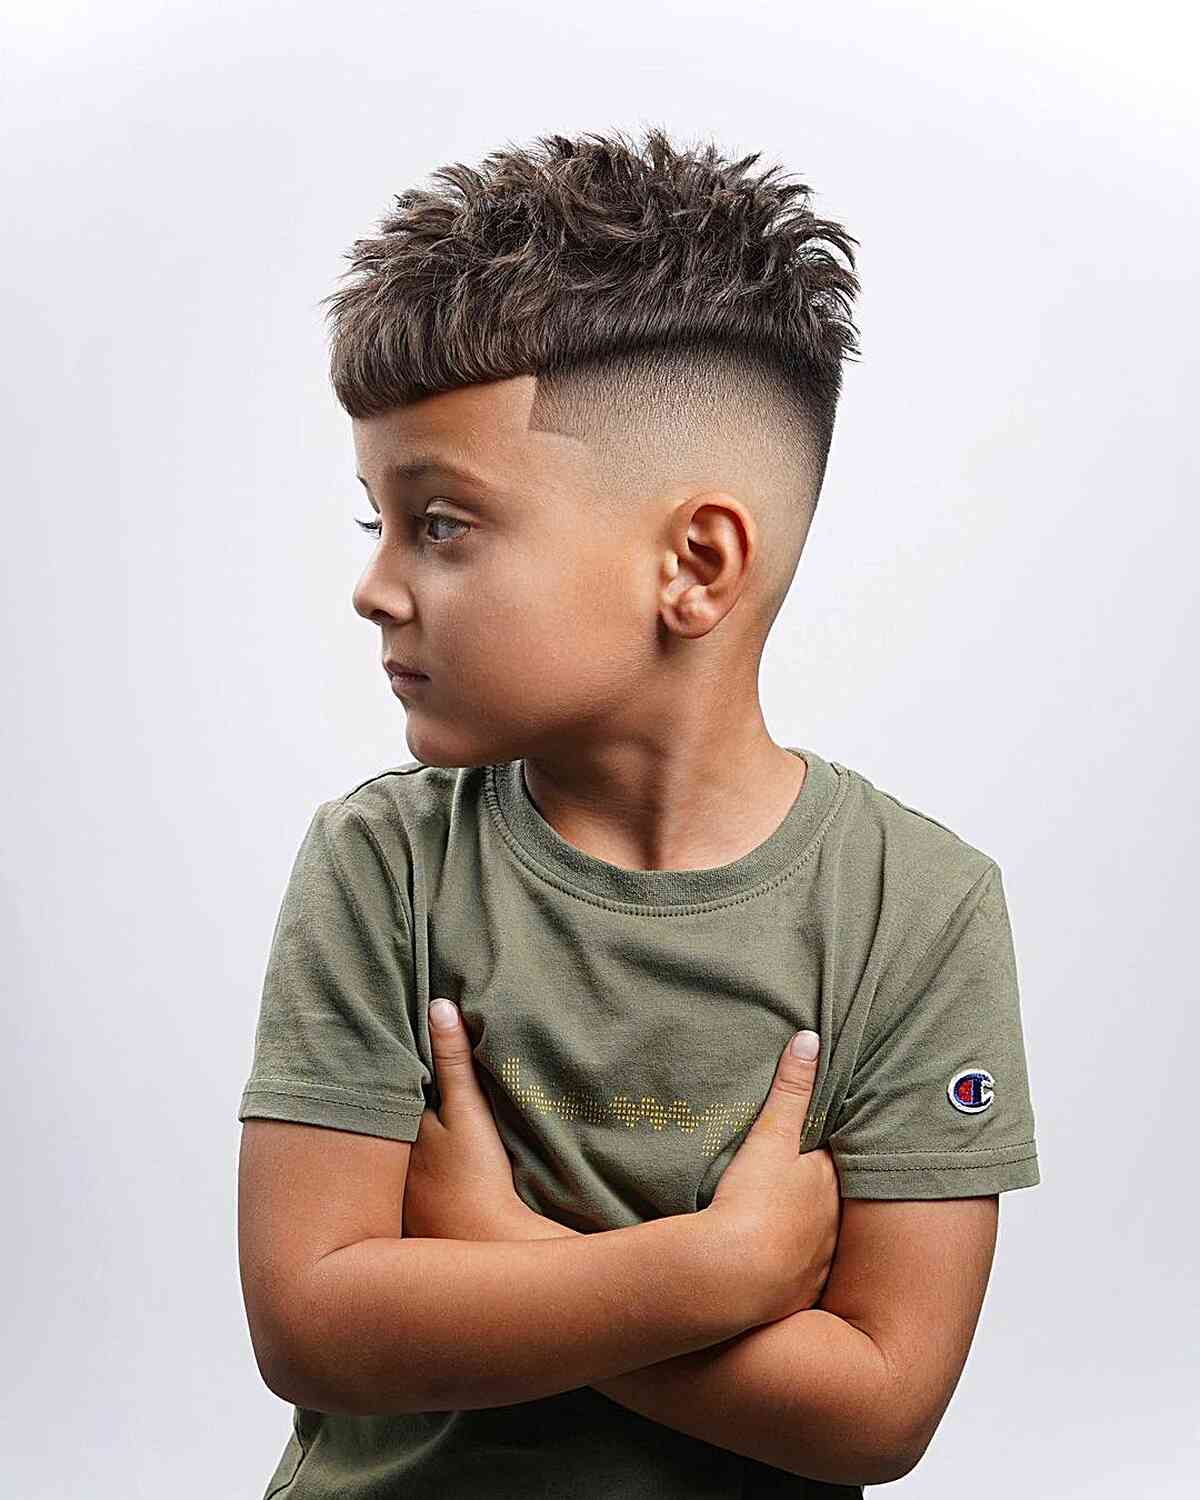 Corte de cabelo fresco “Edgar” com top bagunçado para meninos